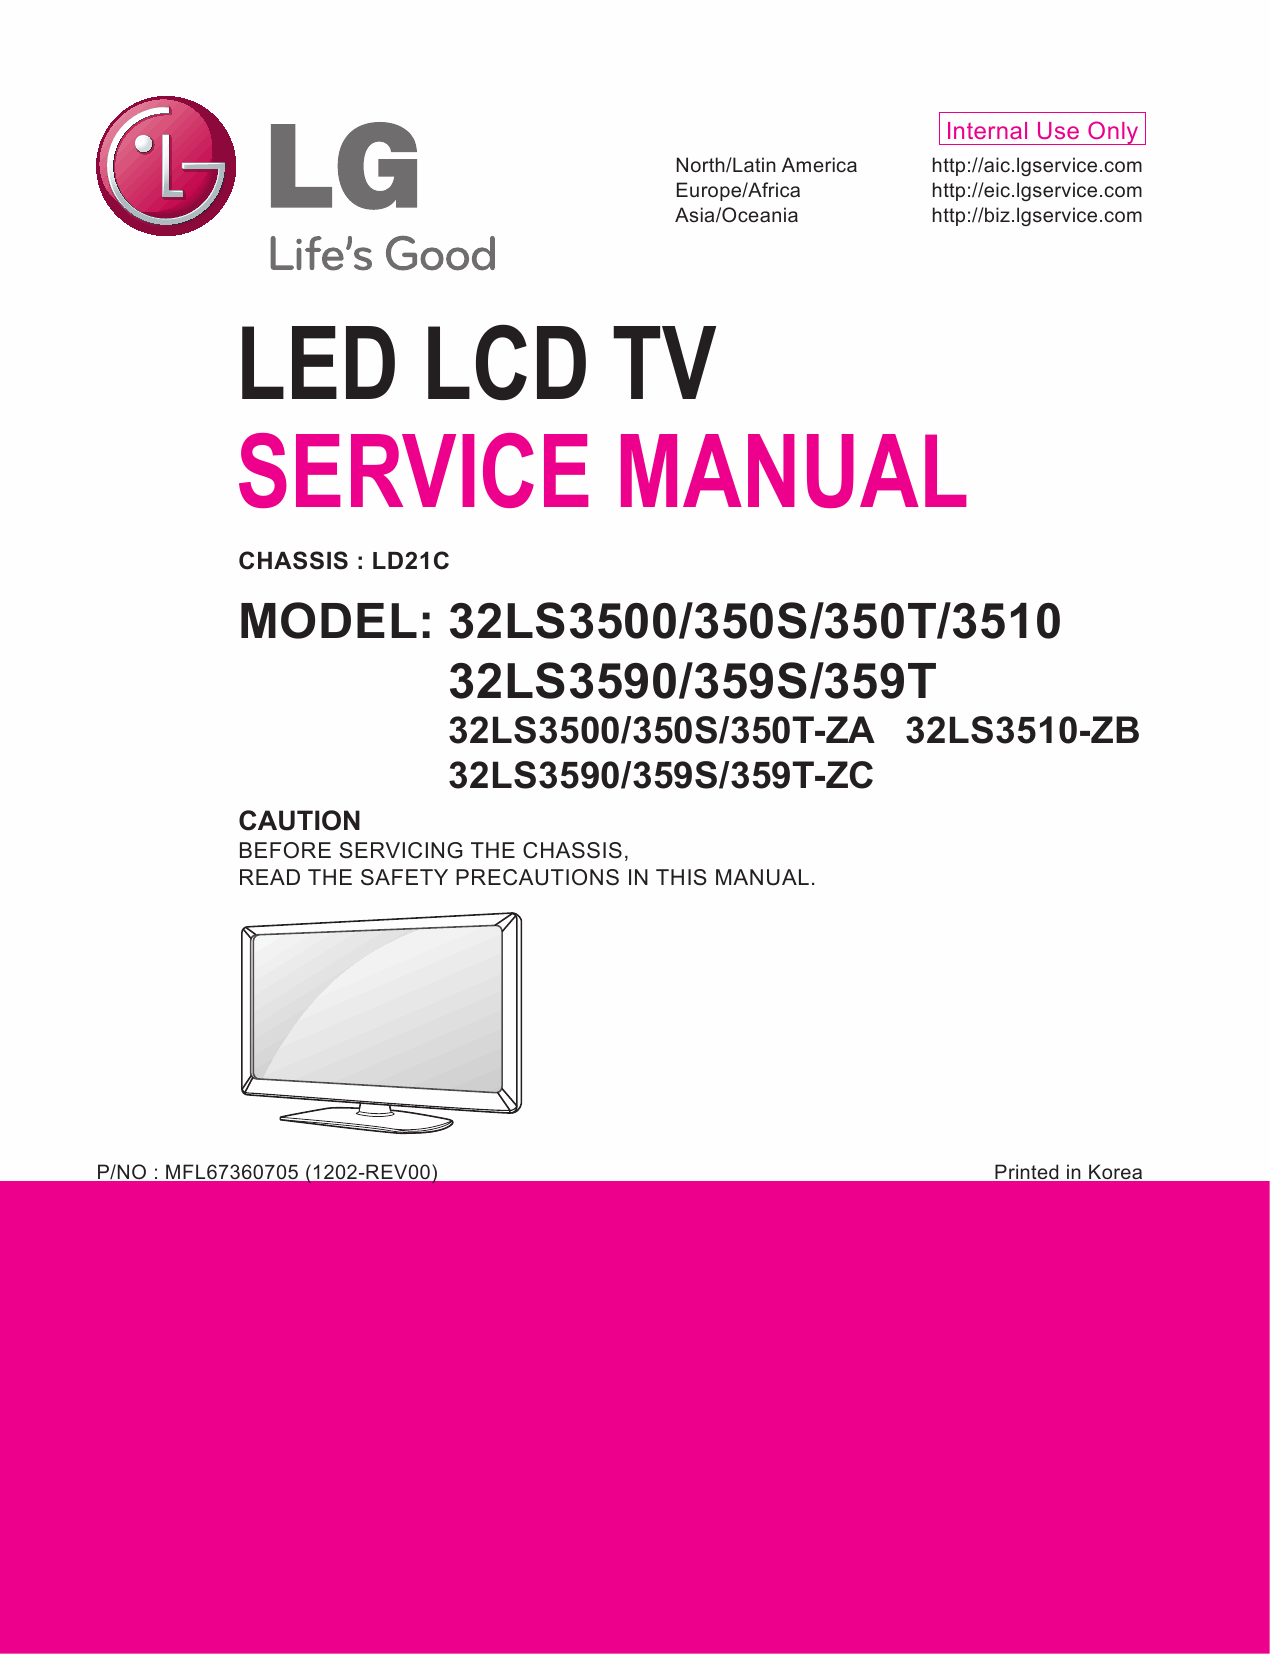 LG_LED_TV_32LS3500_350S_350T_3510_3590_359S_359T_Service_Manual_2012_Qmanual.com-1